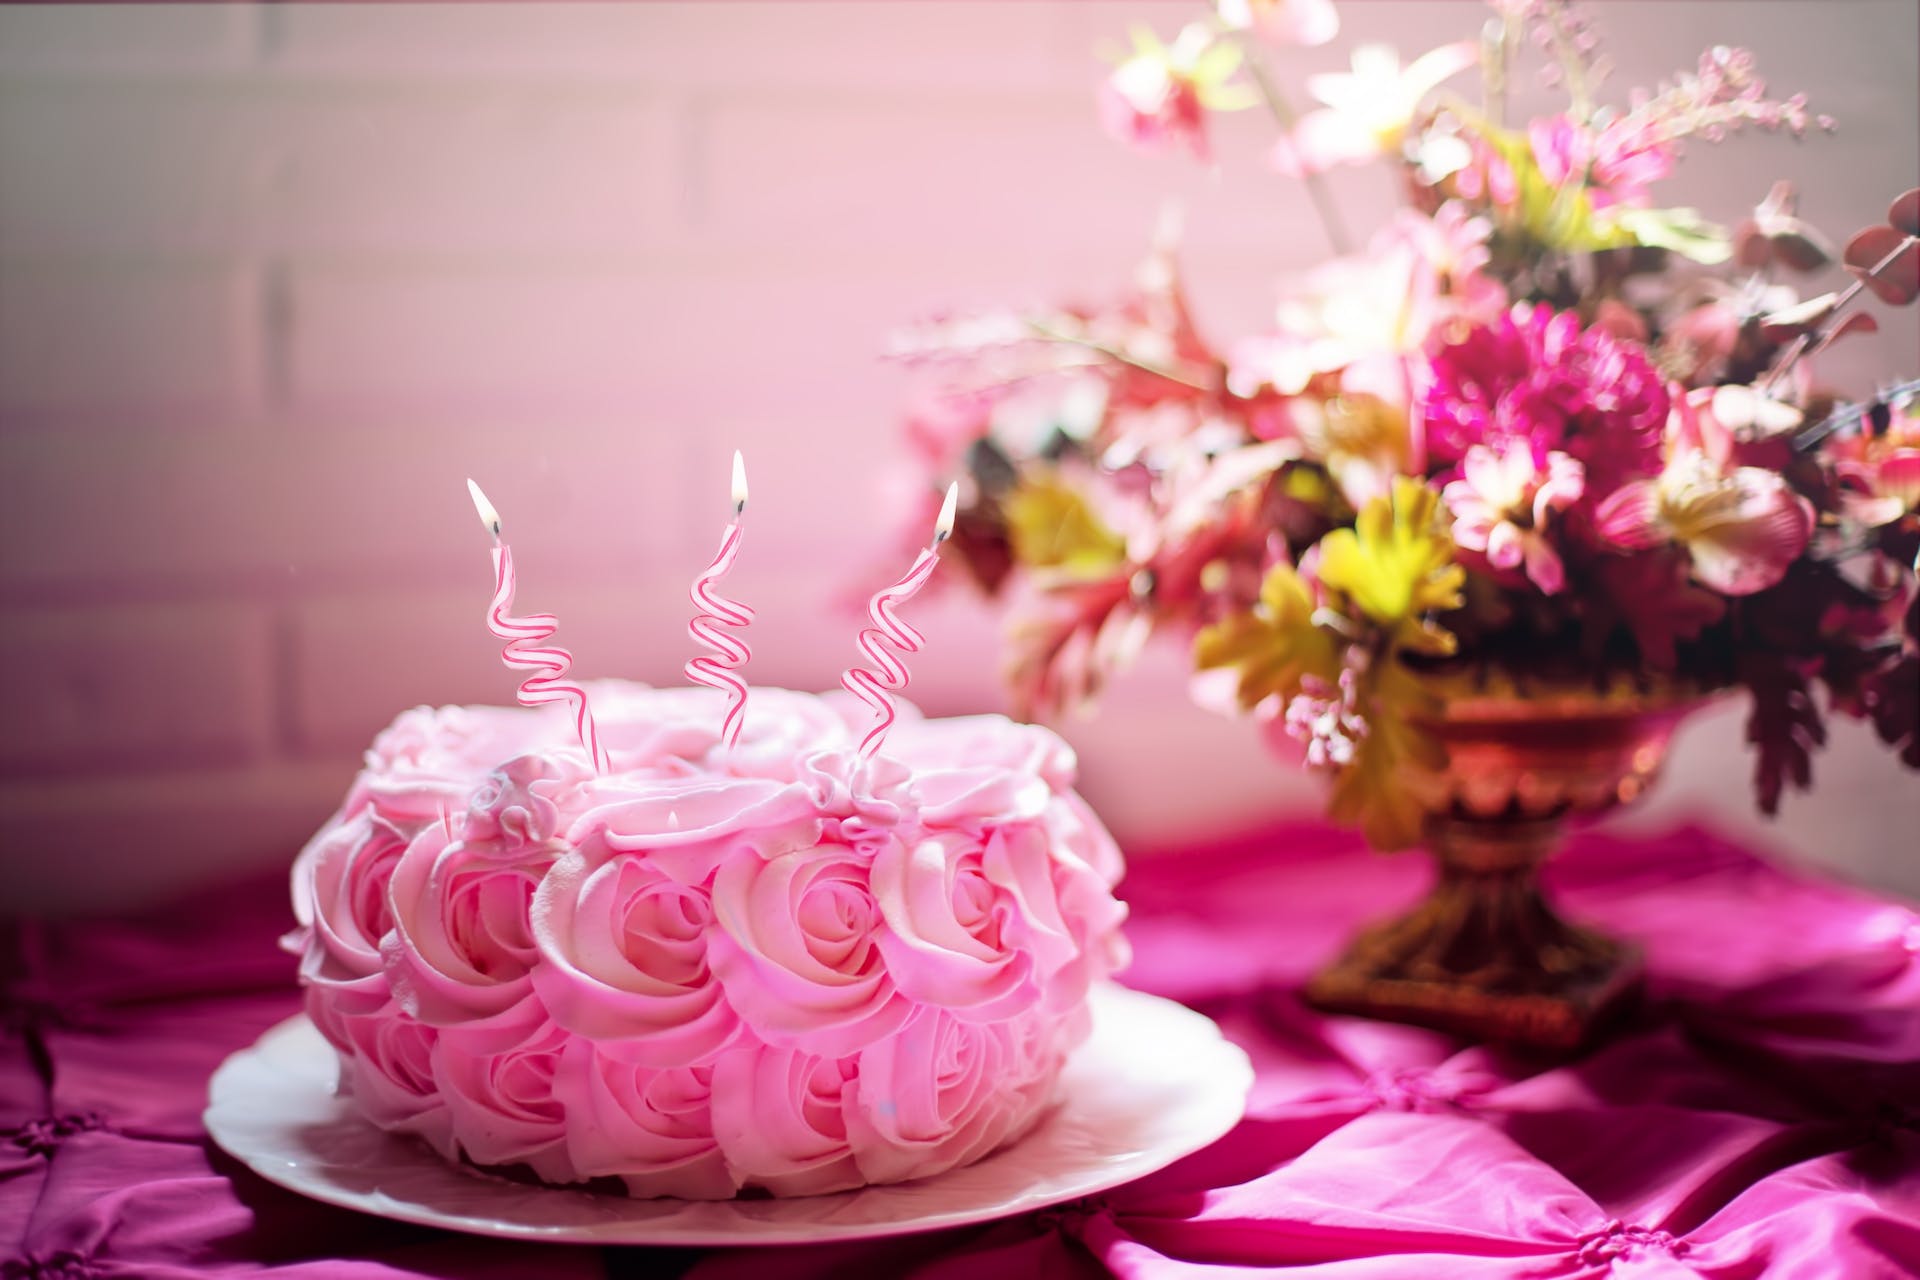 Gâteau d'anniversaire rose | Source : Pexels